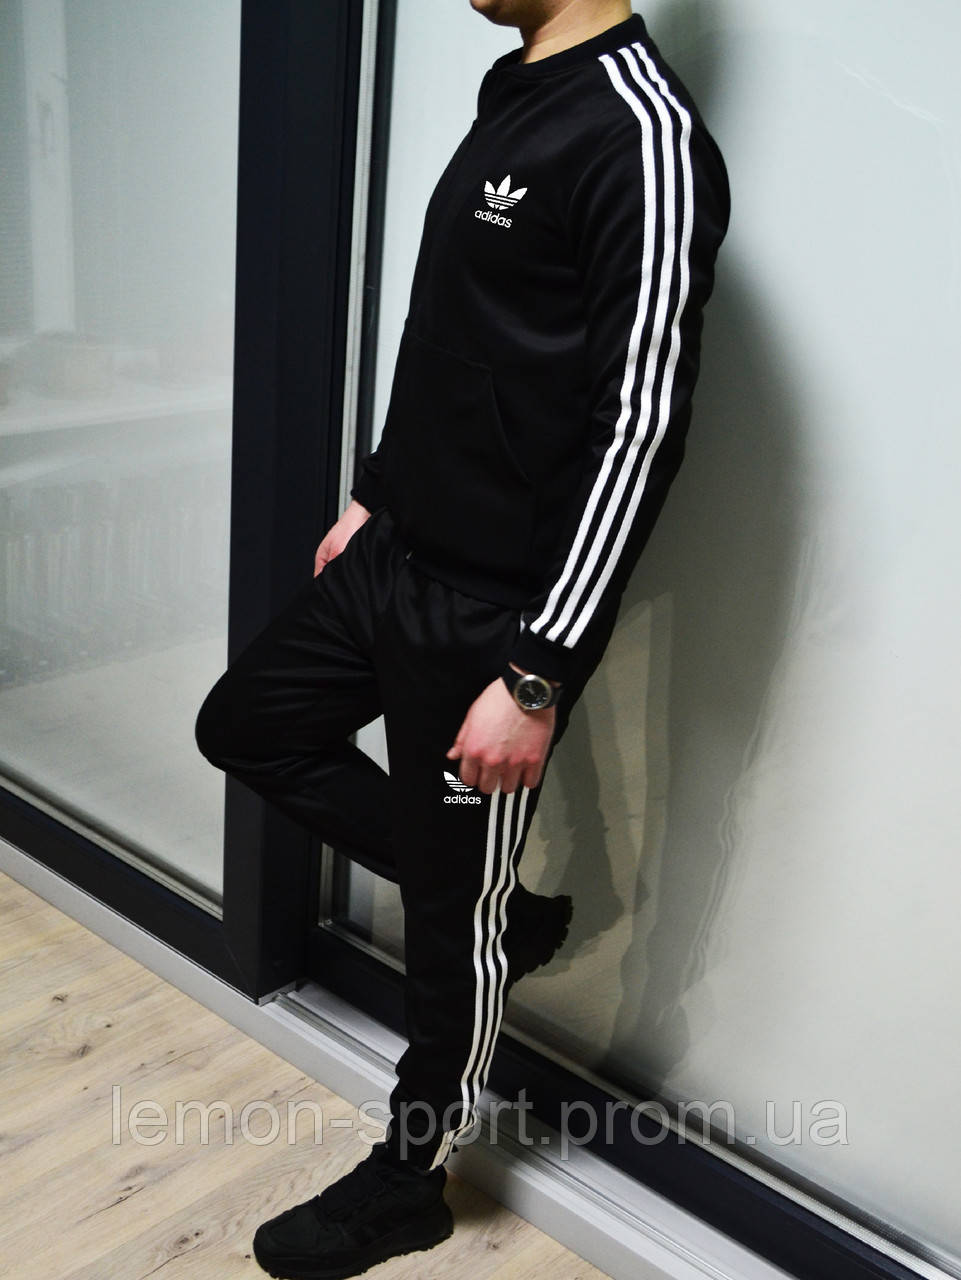 Мужской спортивный костюм с лампасами Adidas (адидас) дайвинг, цена 1079.10  грн., купить в Харькове — Prom.ua (ID#943324617)